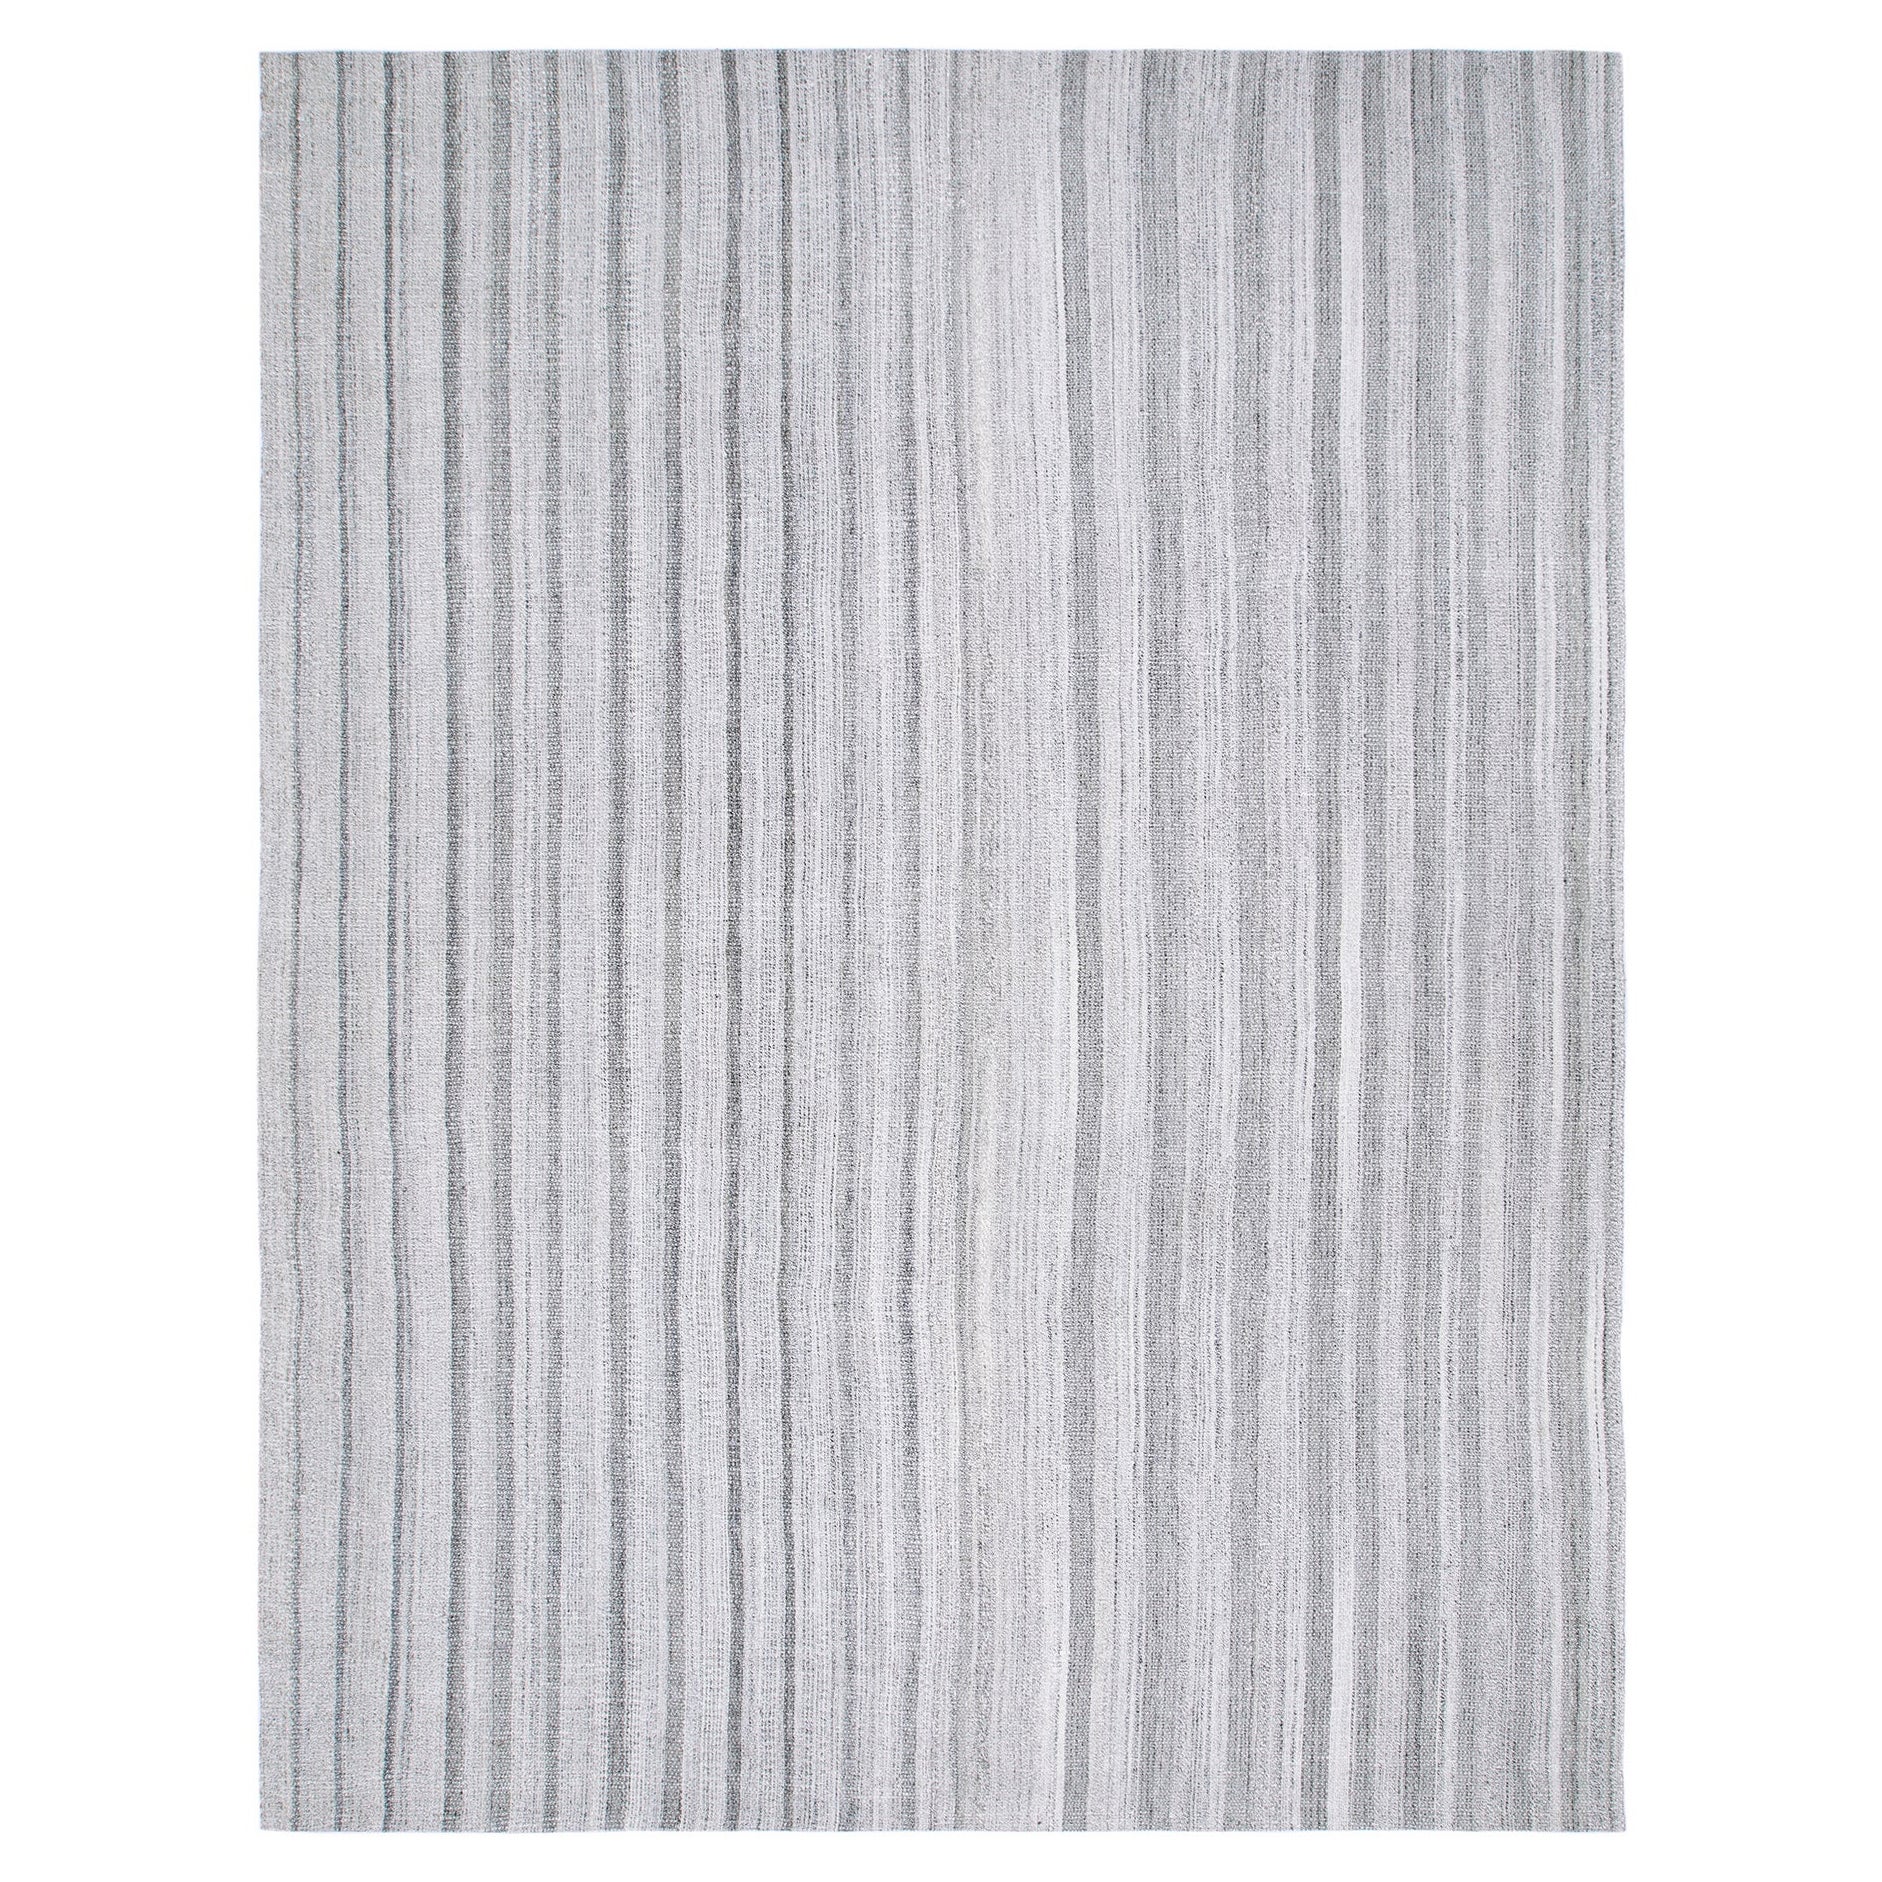 Mid-Century Modern Style Minimalist Stripe Flatweave Rug 